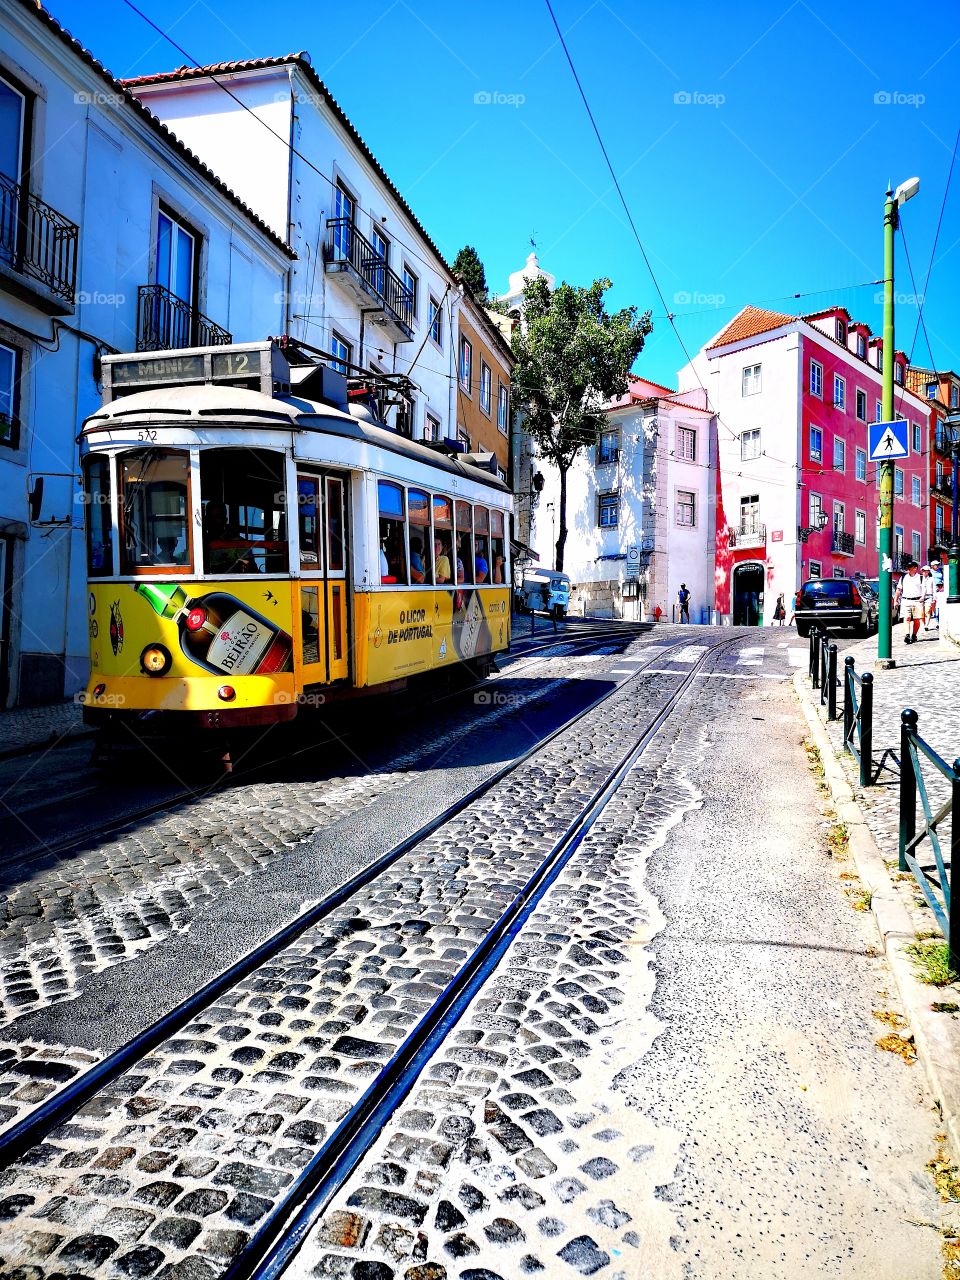 A Portuguese Tram